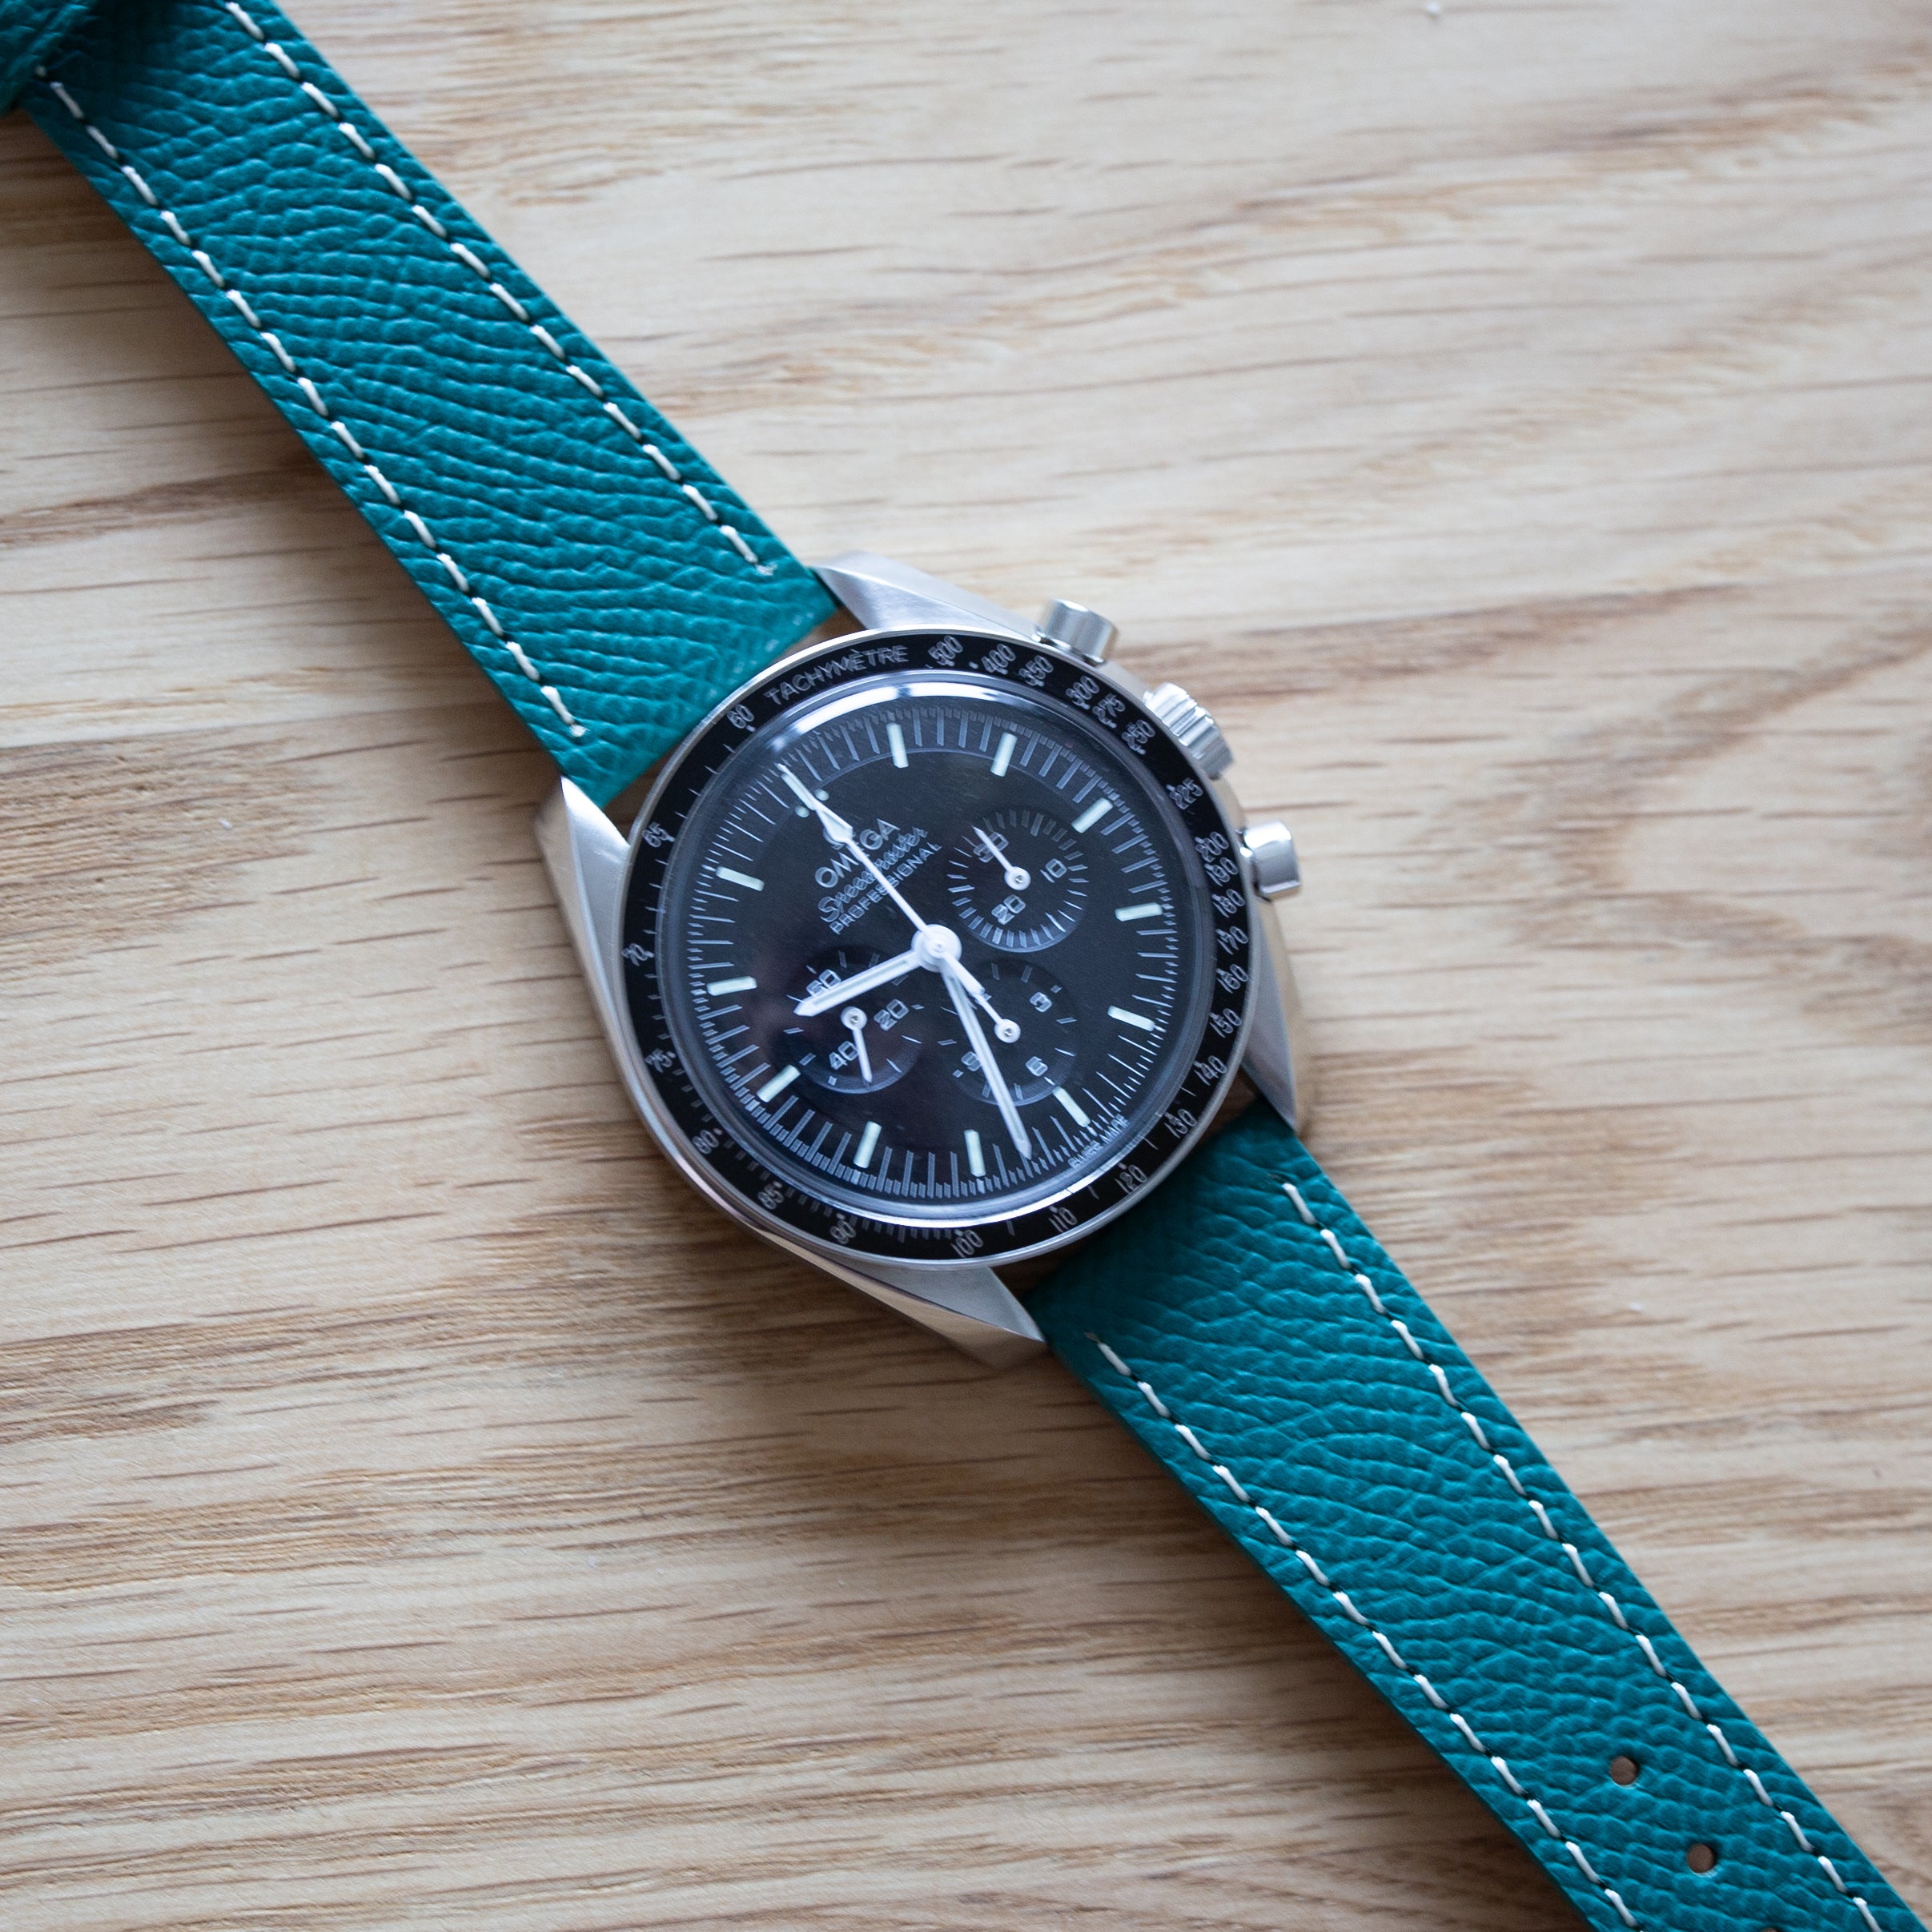 Speedmaster Leather Watch Strap Dark Green